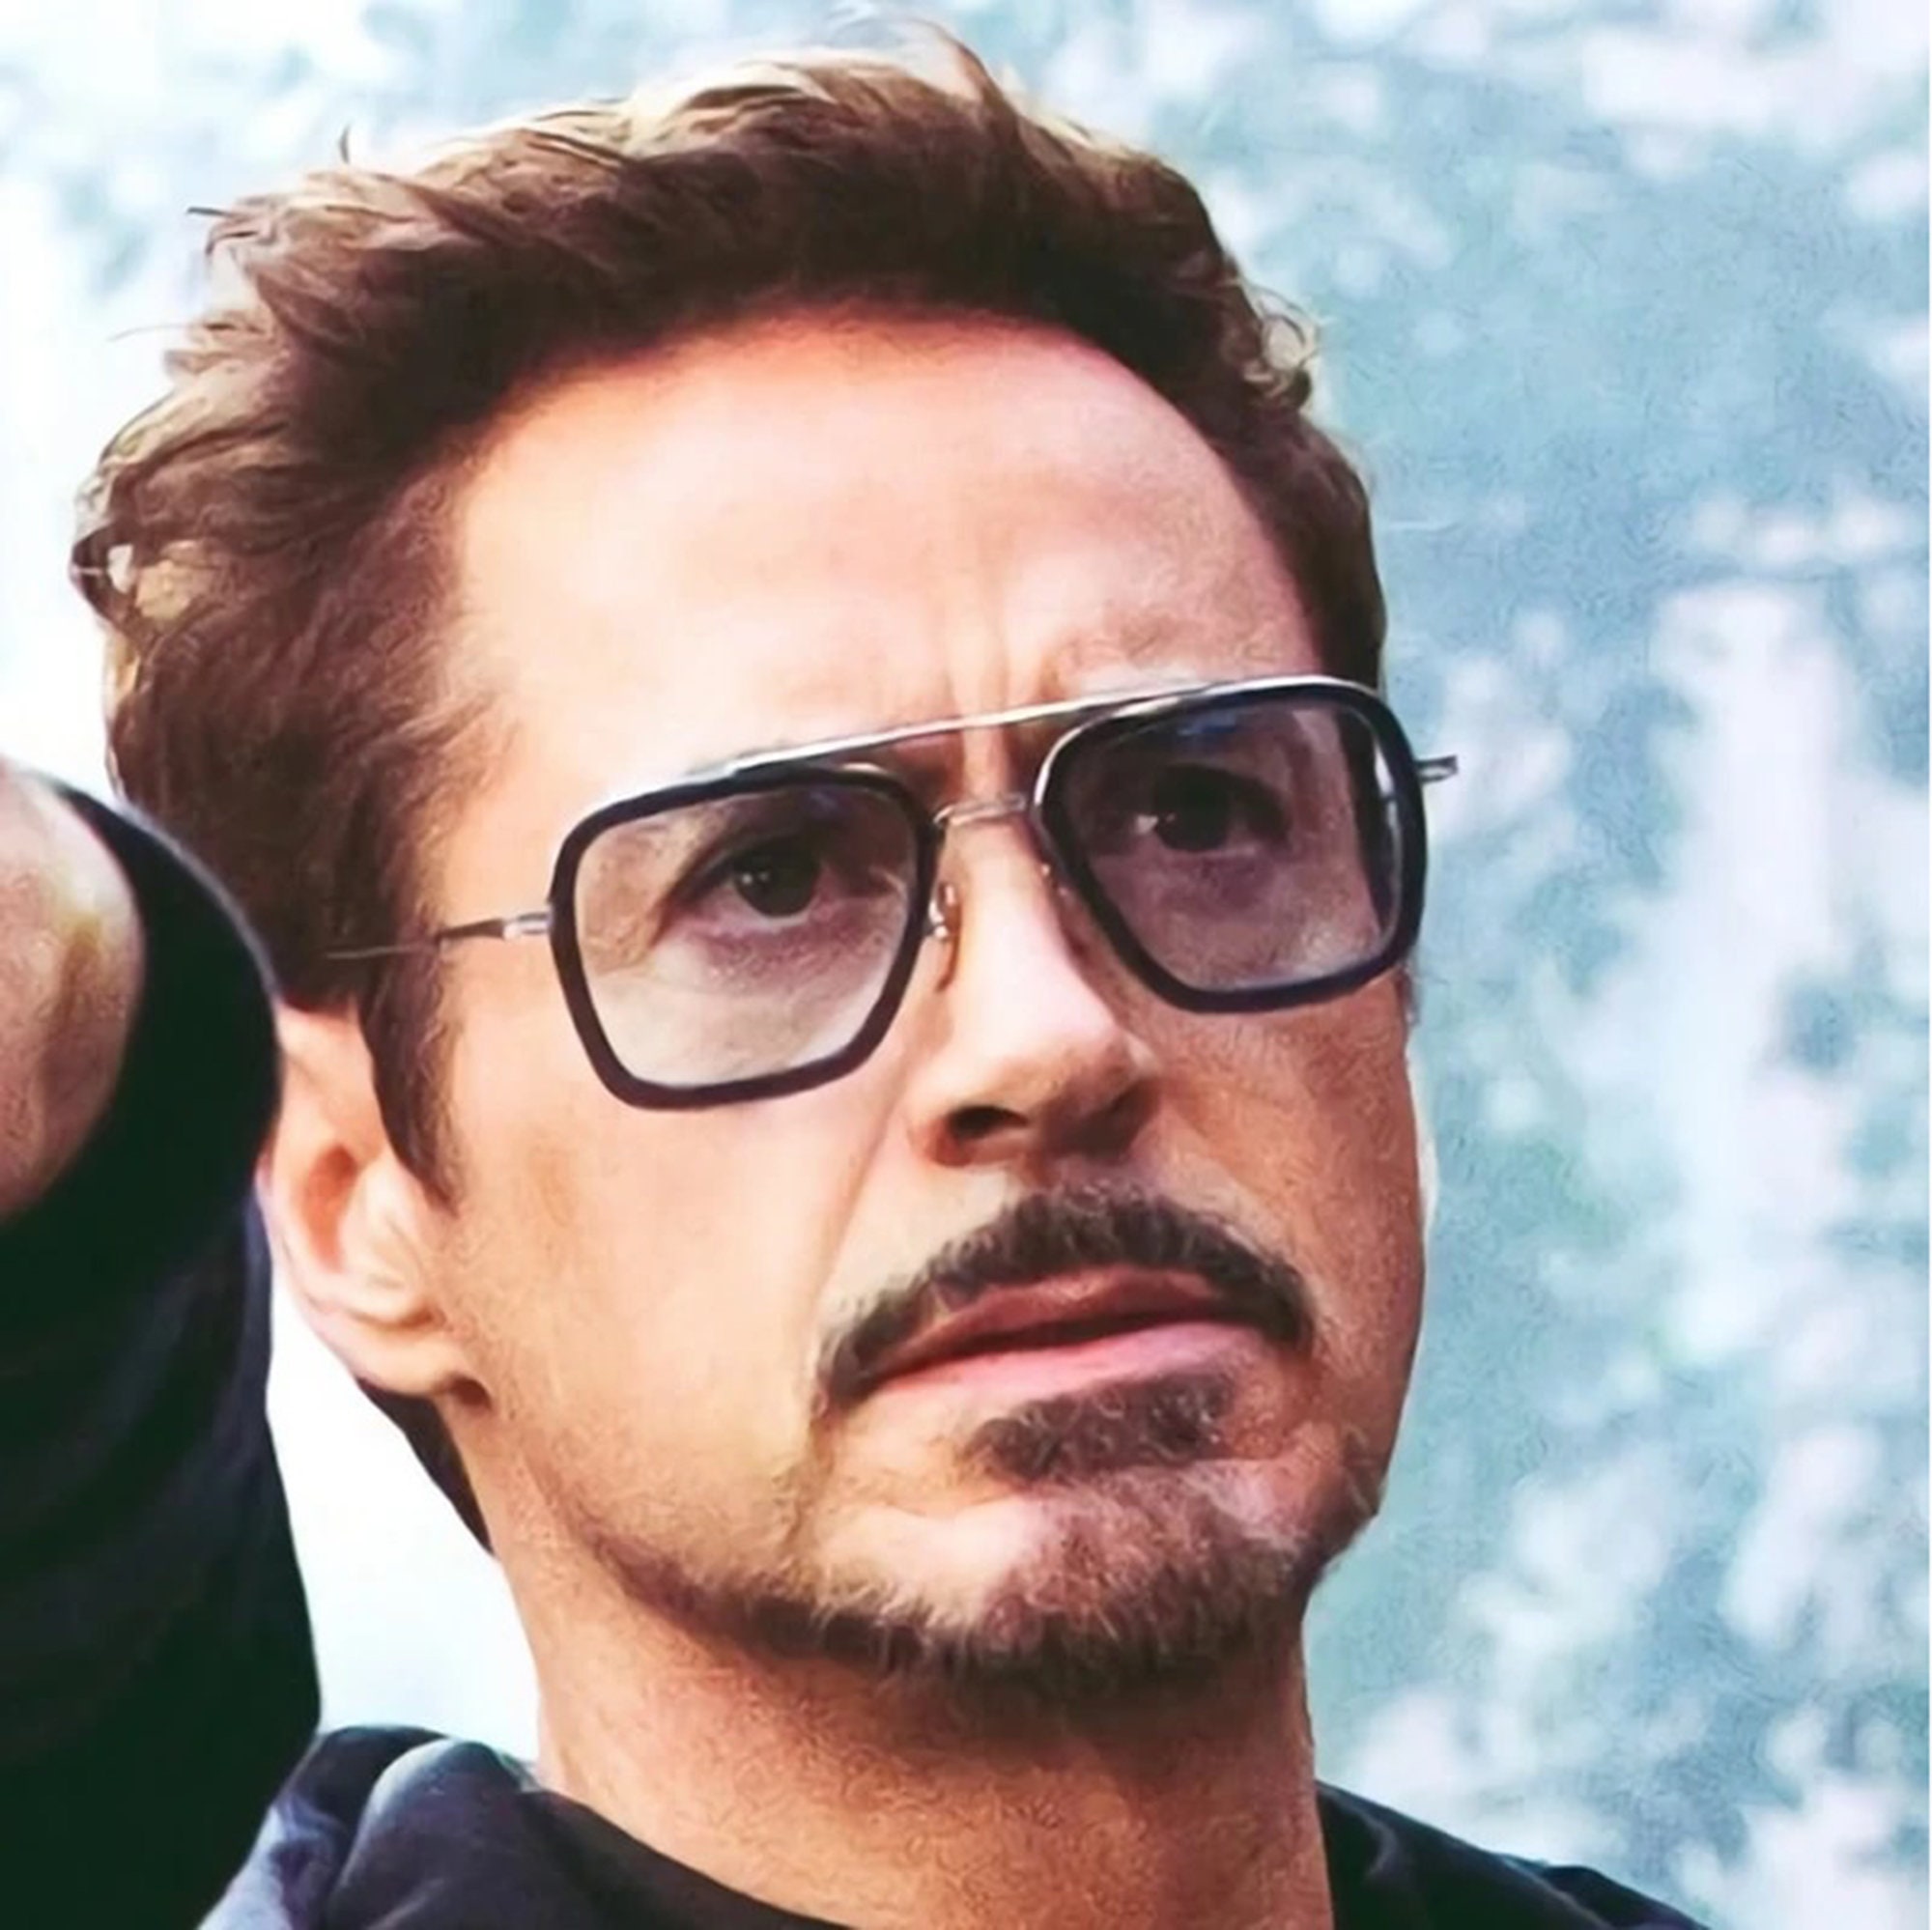 Retro Square Metal Frame Tony Stark Sunglasses for Men Women - Etsy